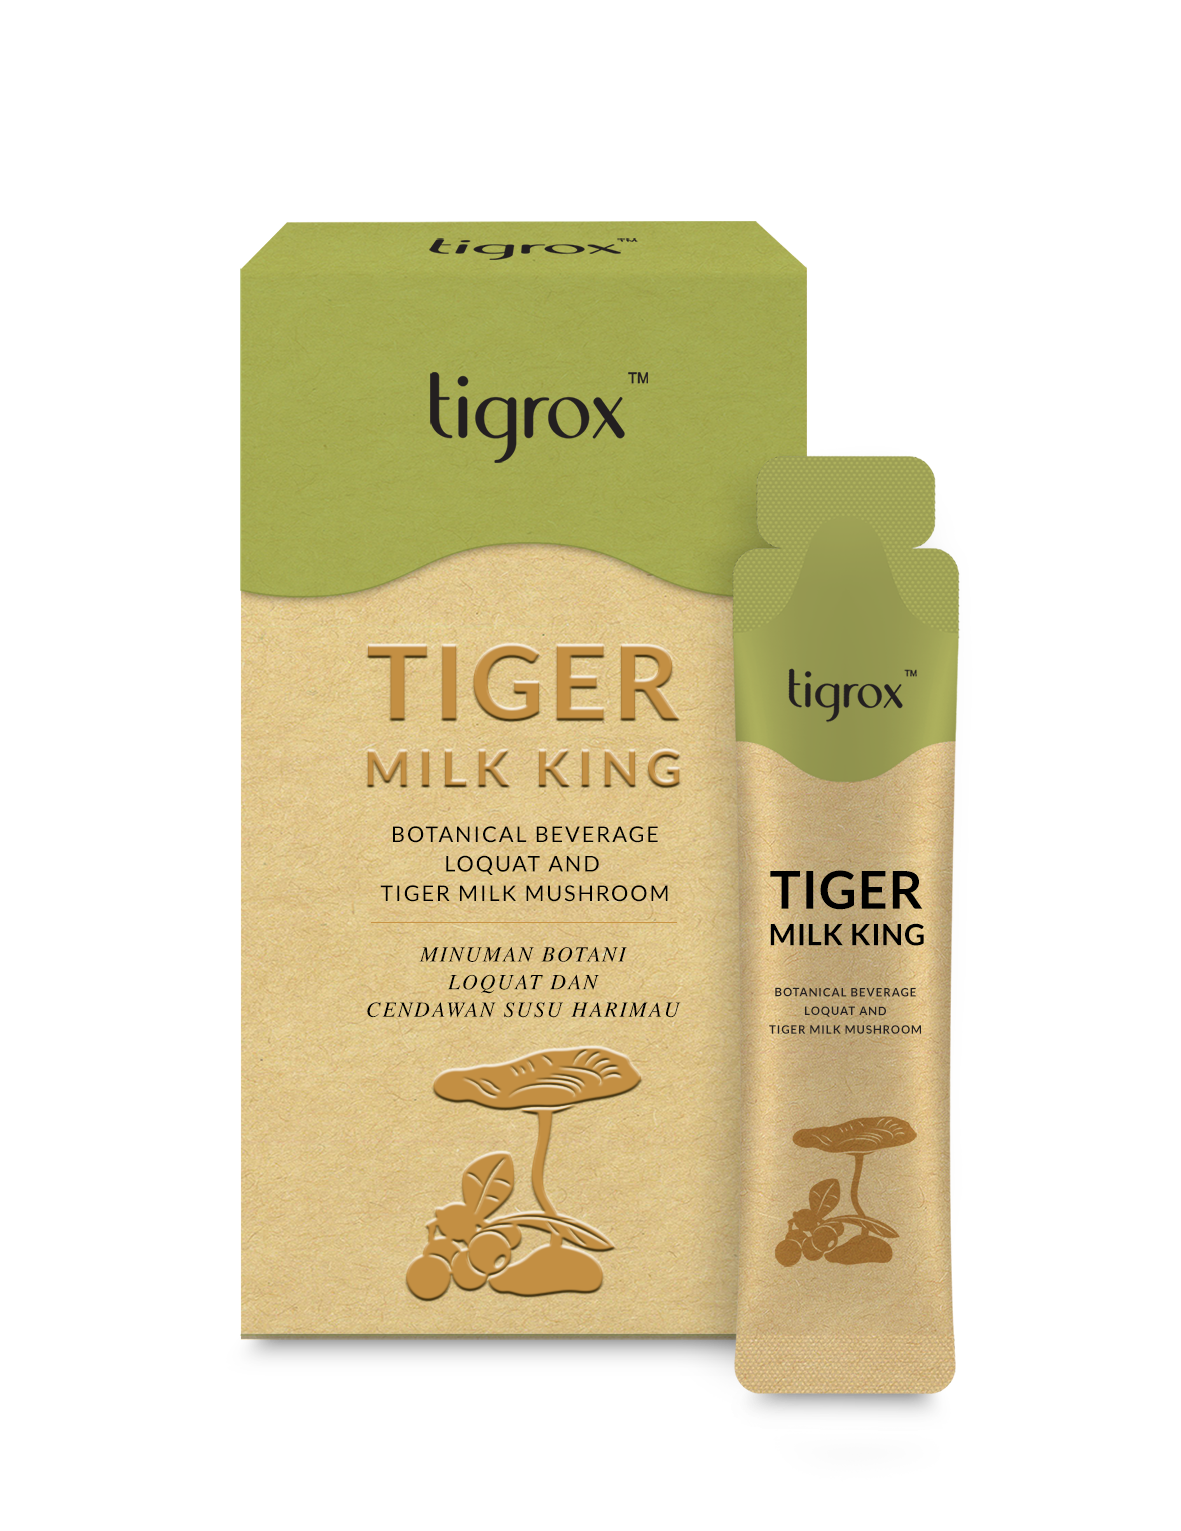 Tiger milk